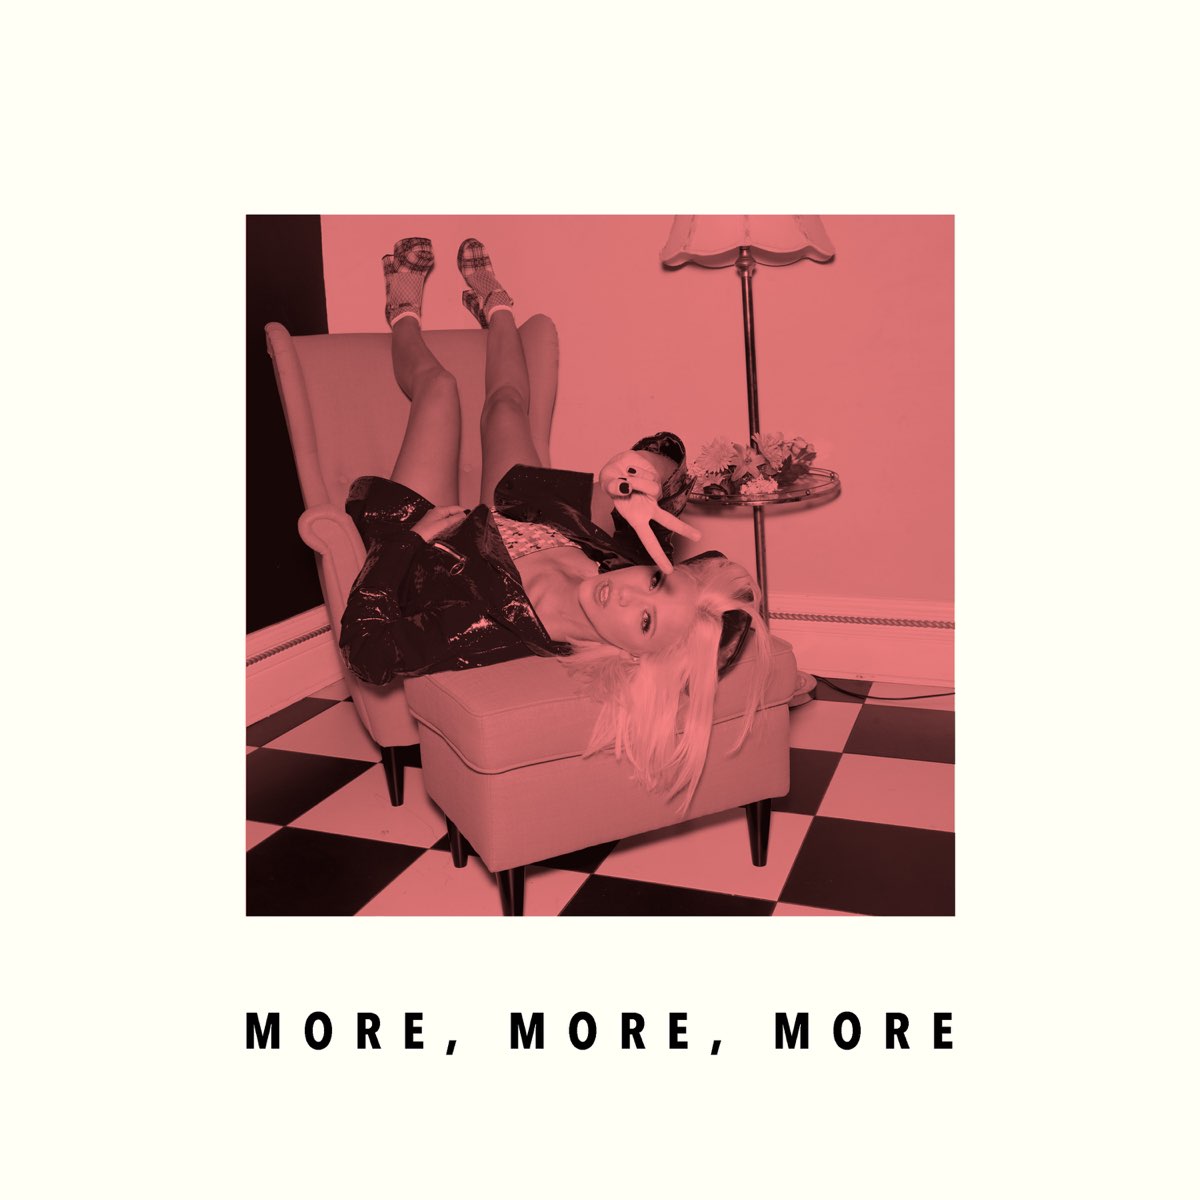 Английская песня more more. More? More альбом. Dagny обложка. More, more, more Андреа тру. More more more песня.